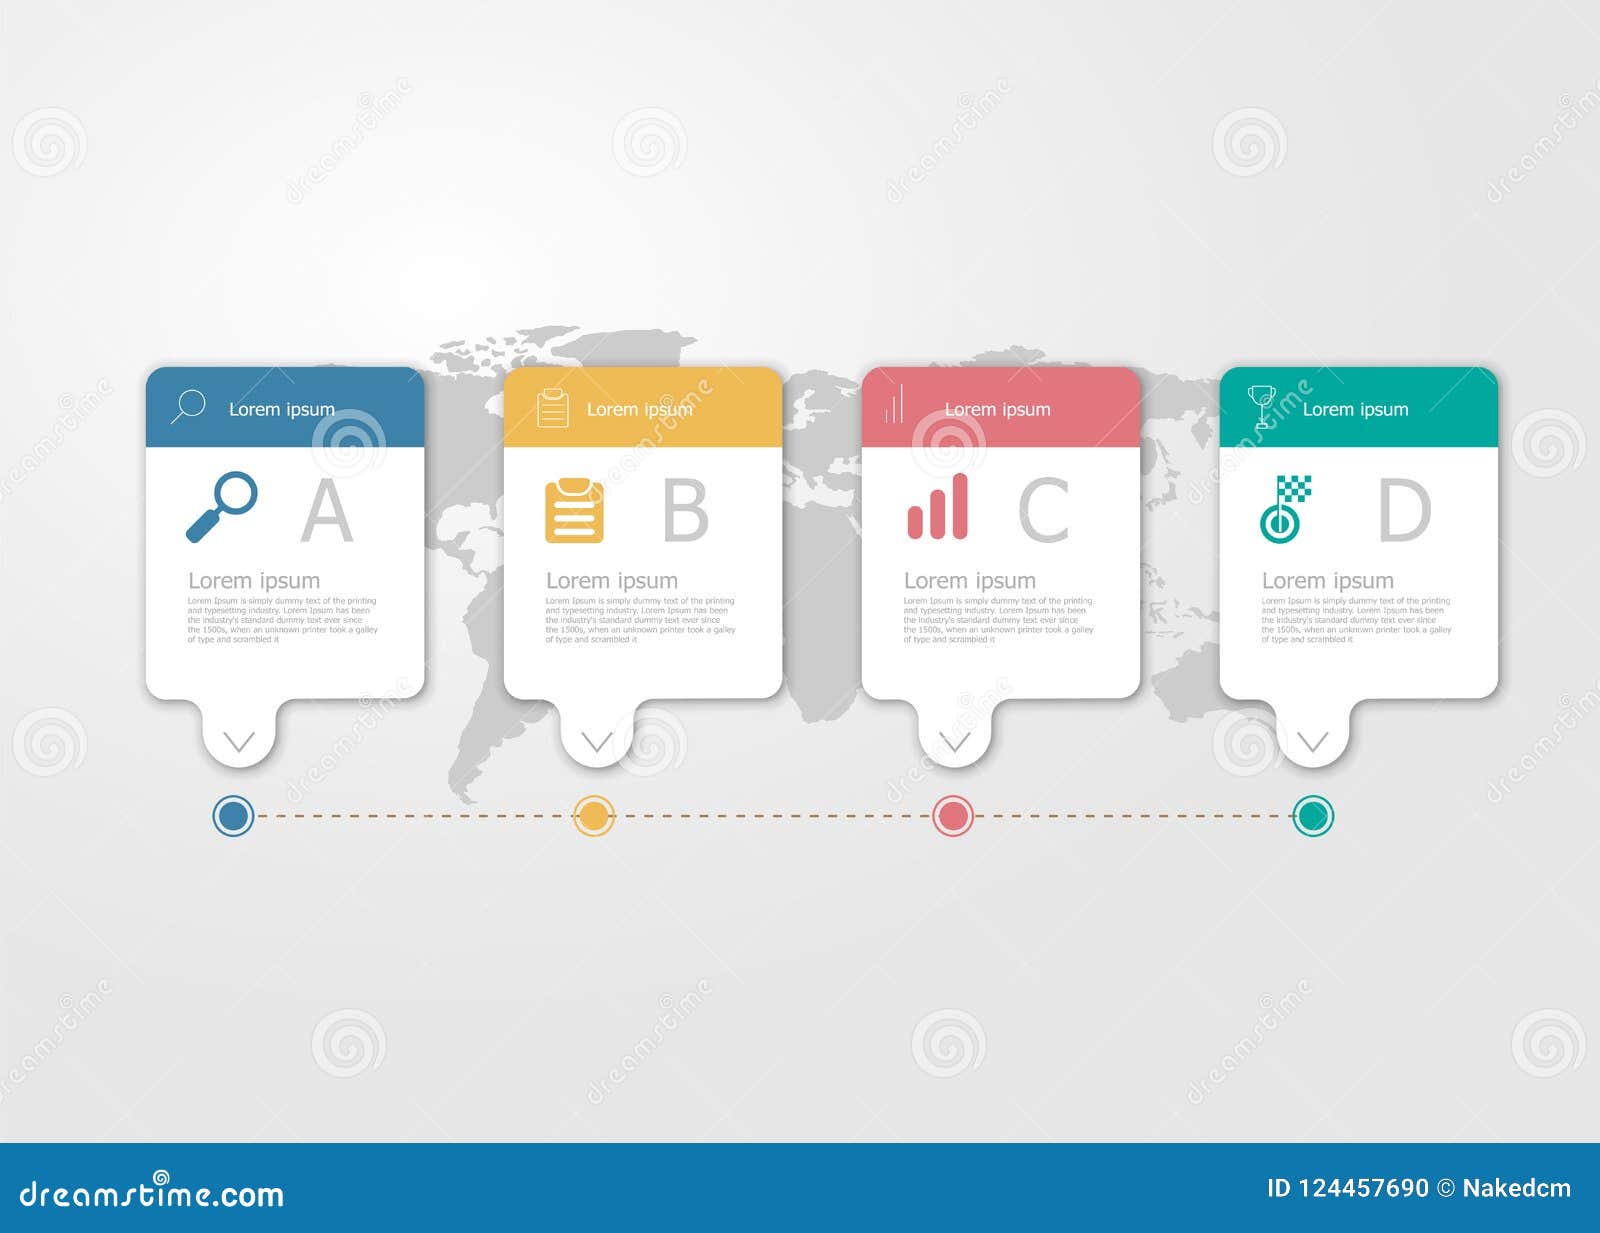 Illustration of horizontal timeline infographics 4 steps for business presentation vector flat background